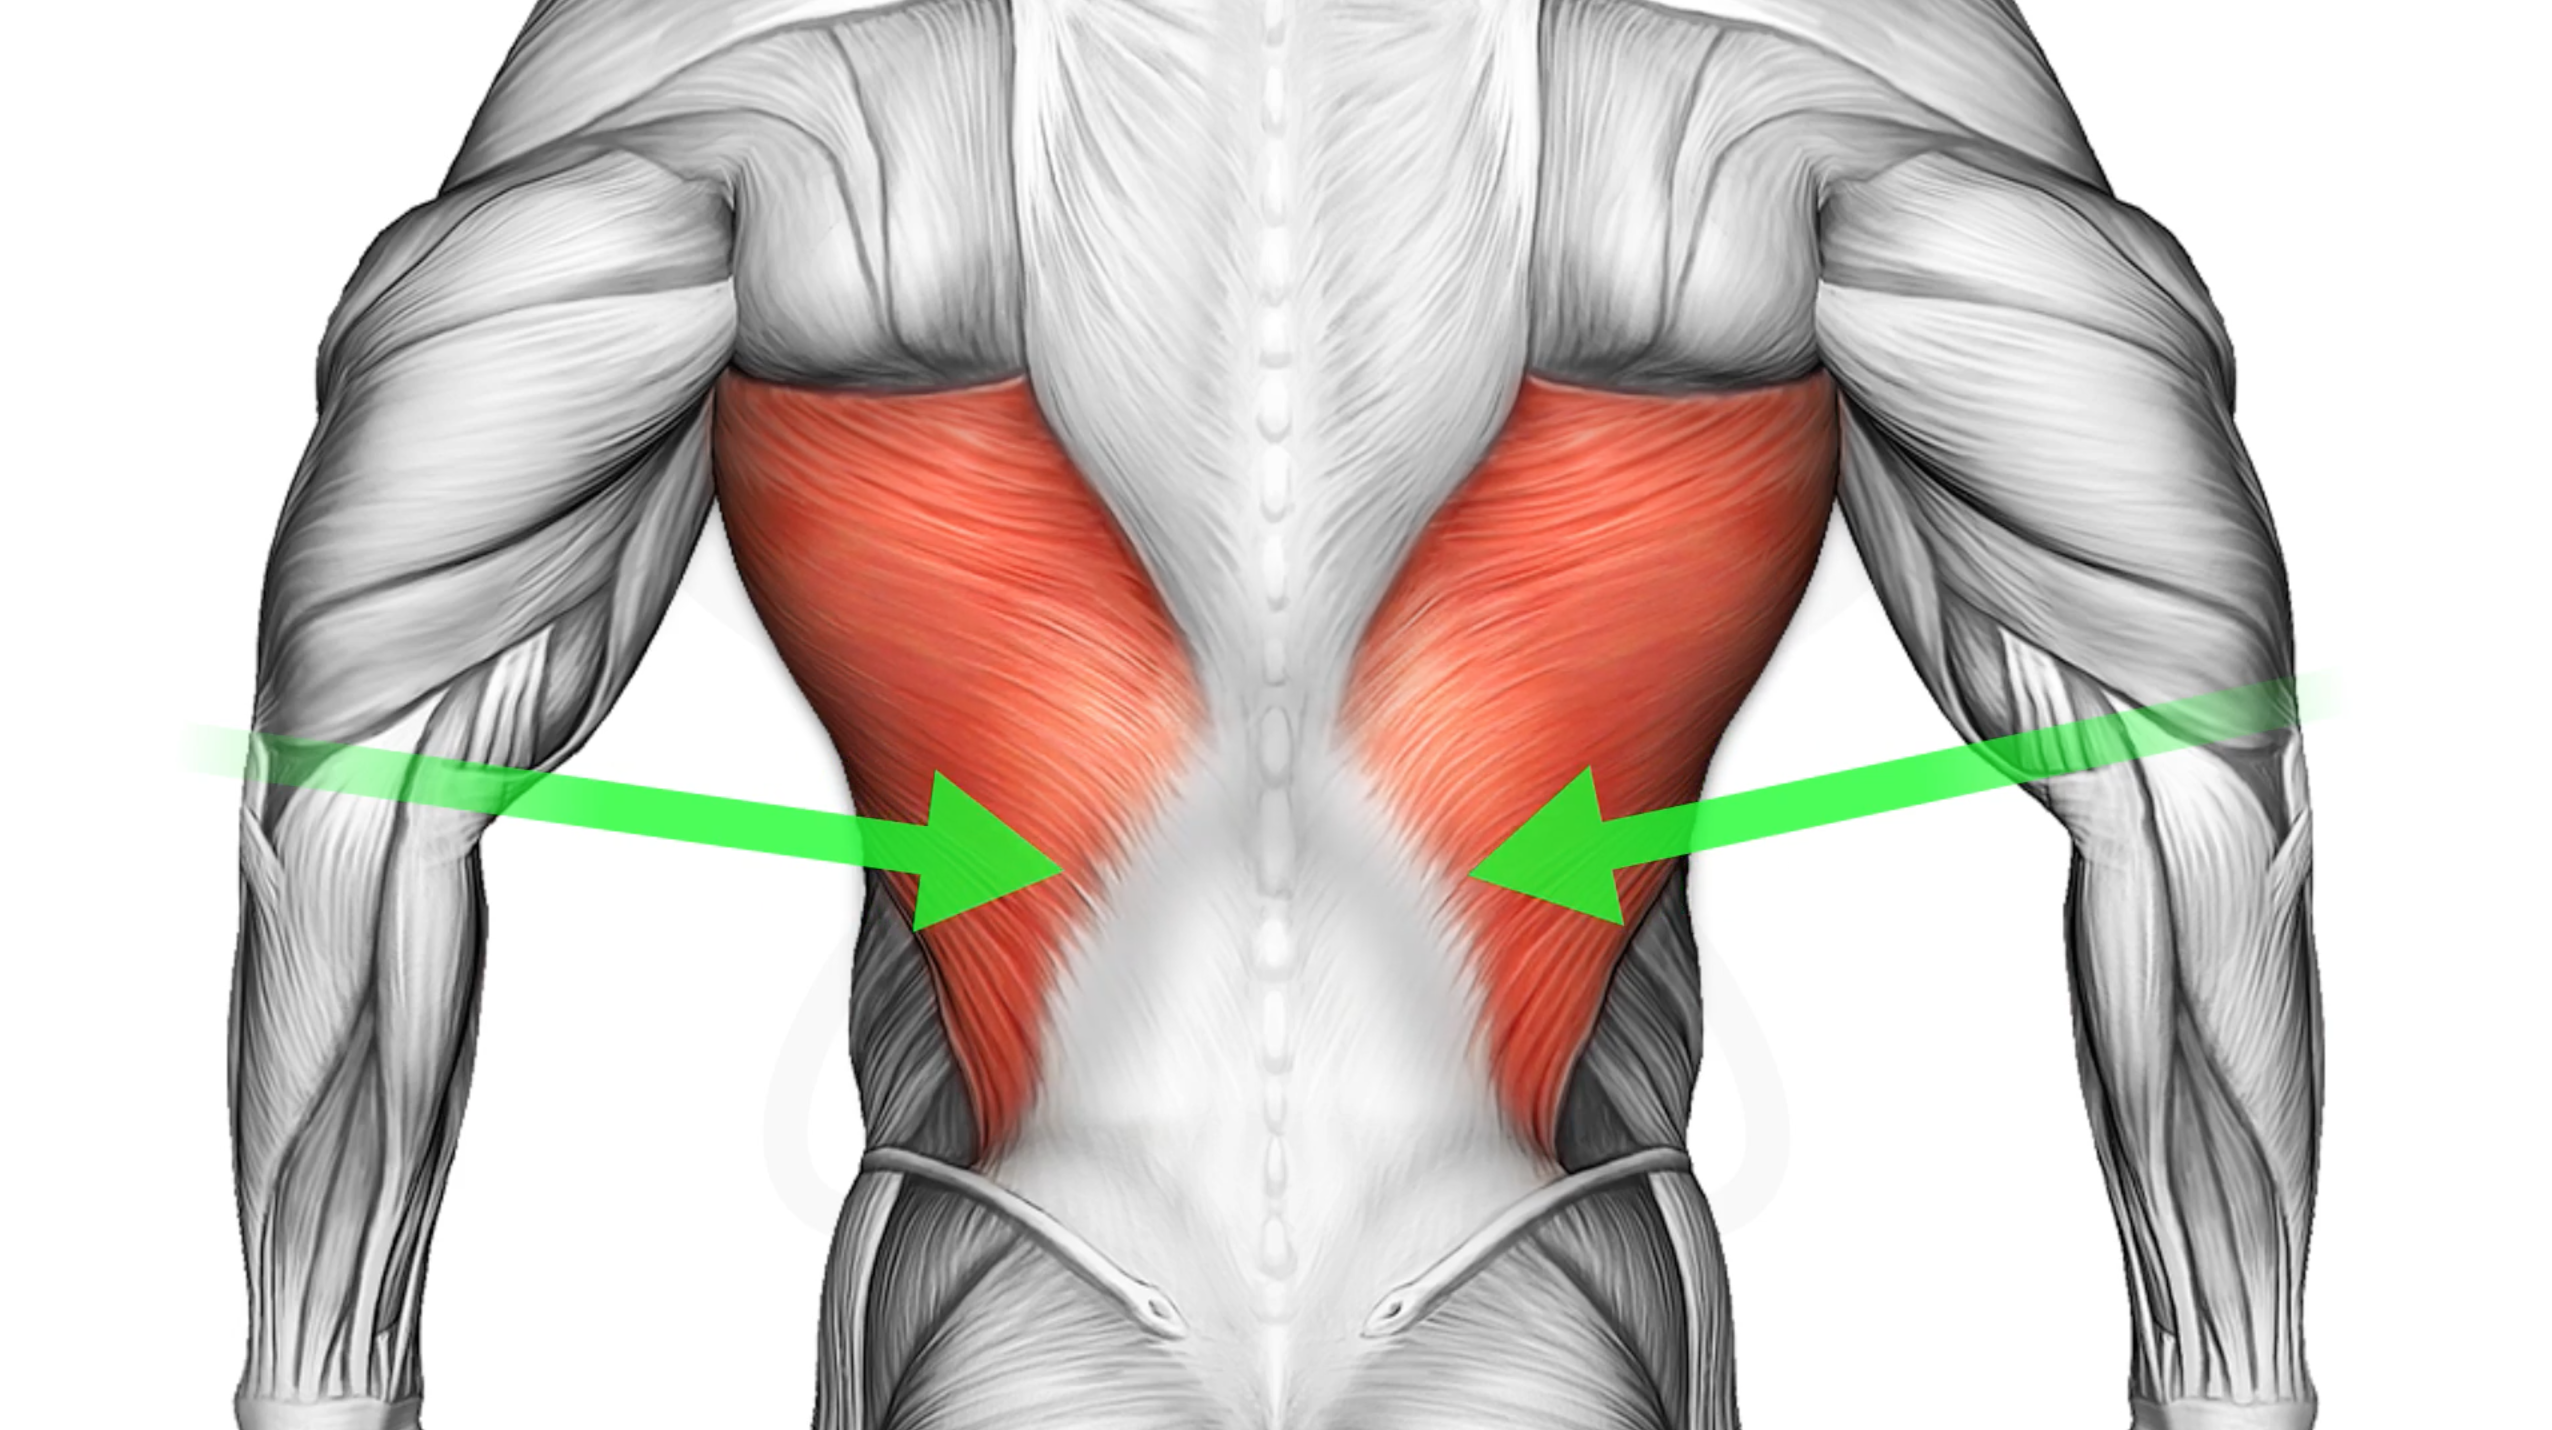 Широчайшая мышца спины вид спереди. Апоневроз широчайшей мышцы спины. Мышцы спины широчайшие трапеция ромбовидные круглые. Крылья мышцы спины спереди.